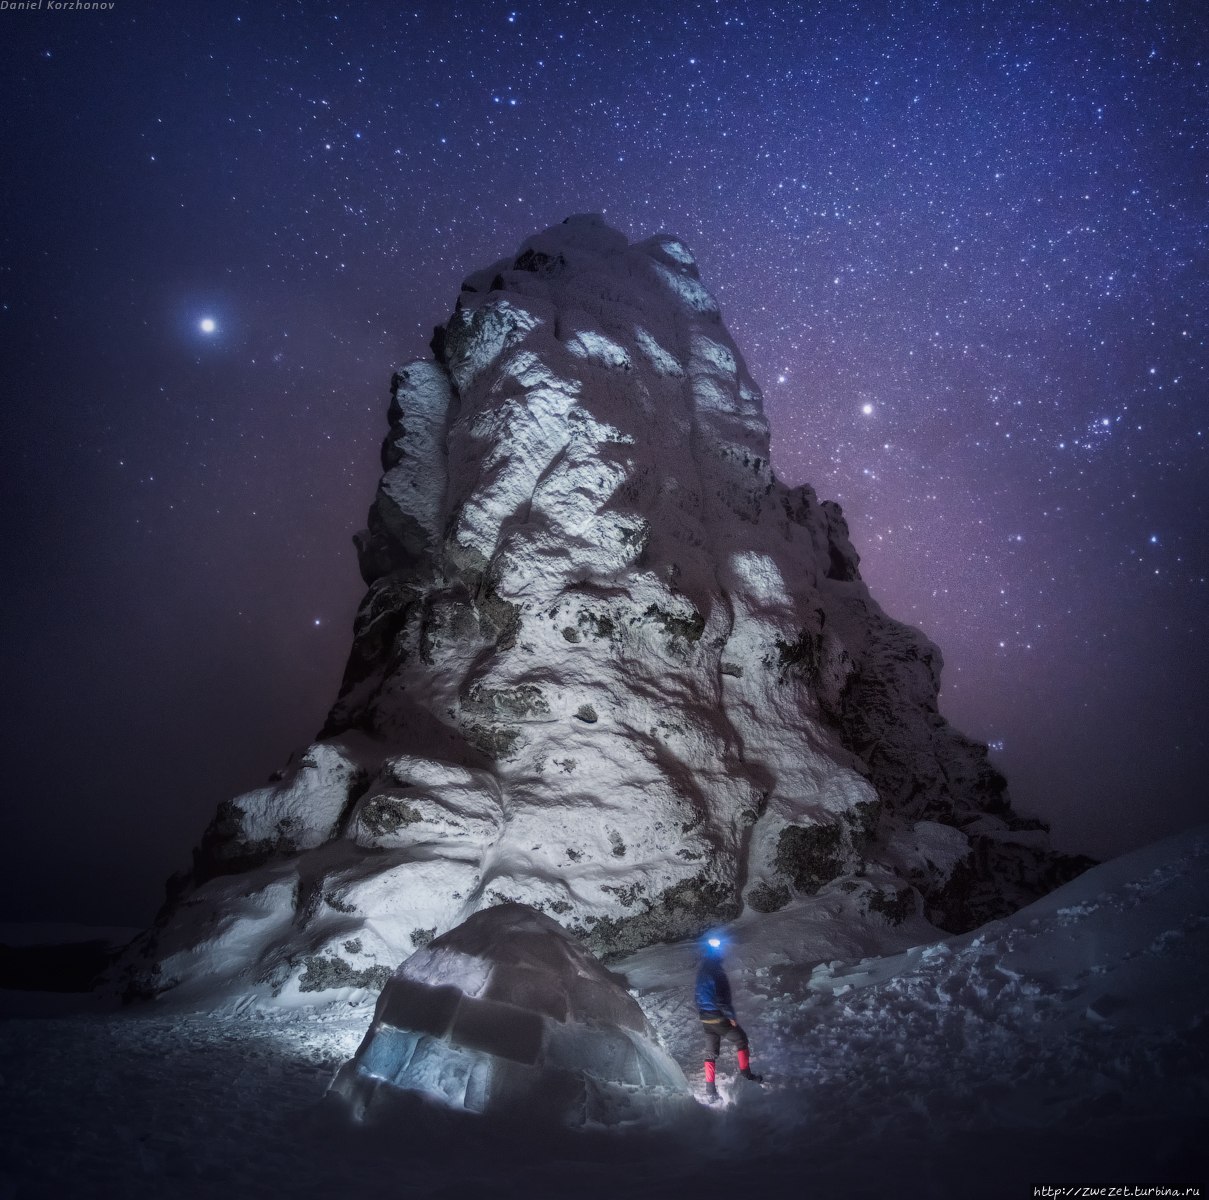 Ночь на плато Маньпупунер (фото Даниила Коржонова) Свердловская область, Россия